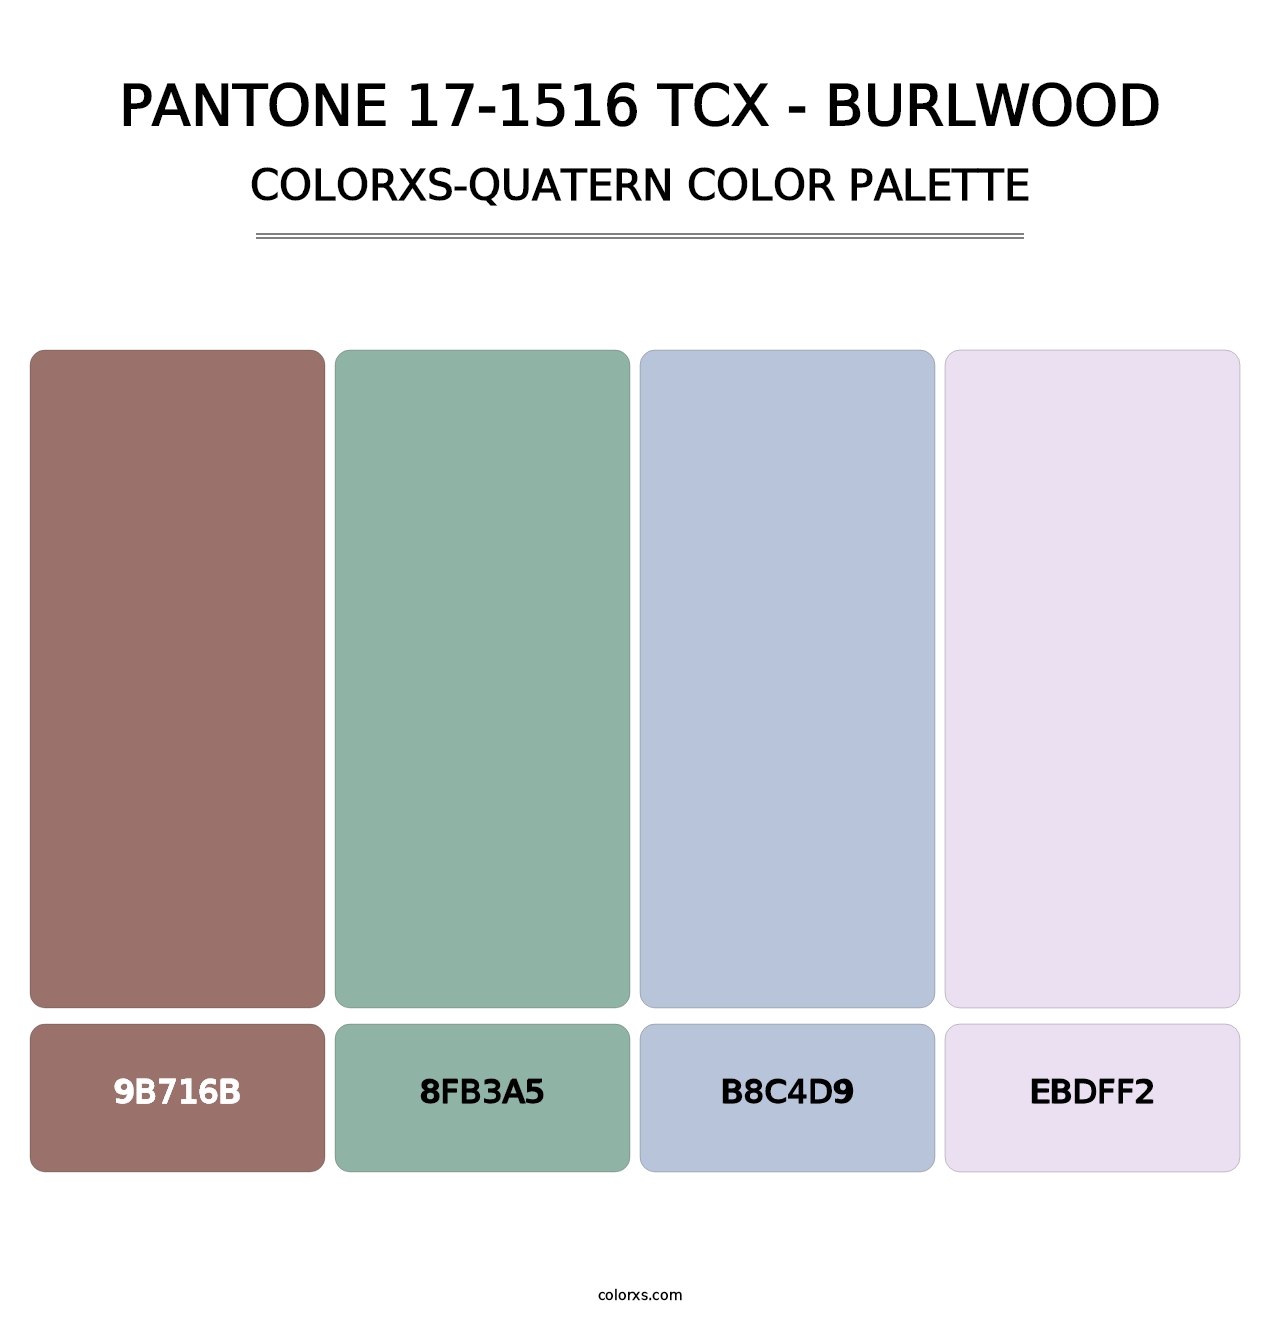 PANTONE 17-1516 TCX - Burlwood - Colorxs Quatern Palette